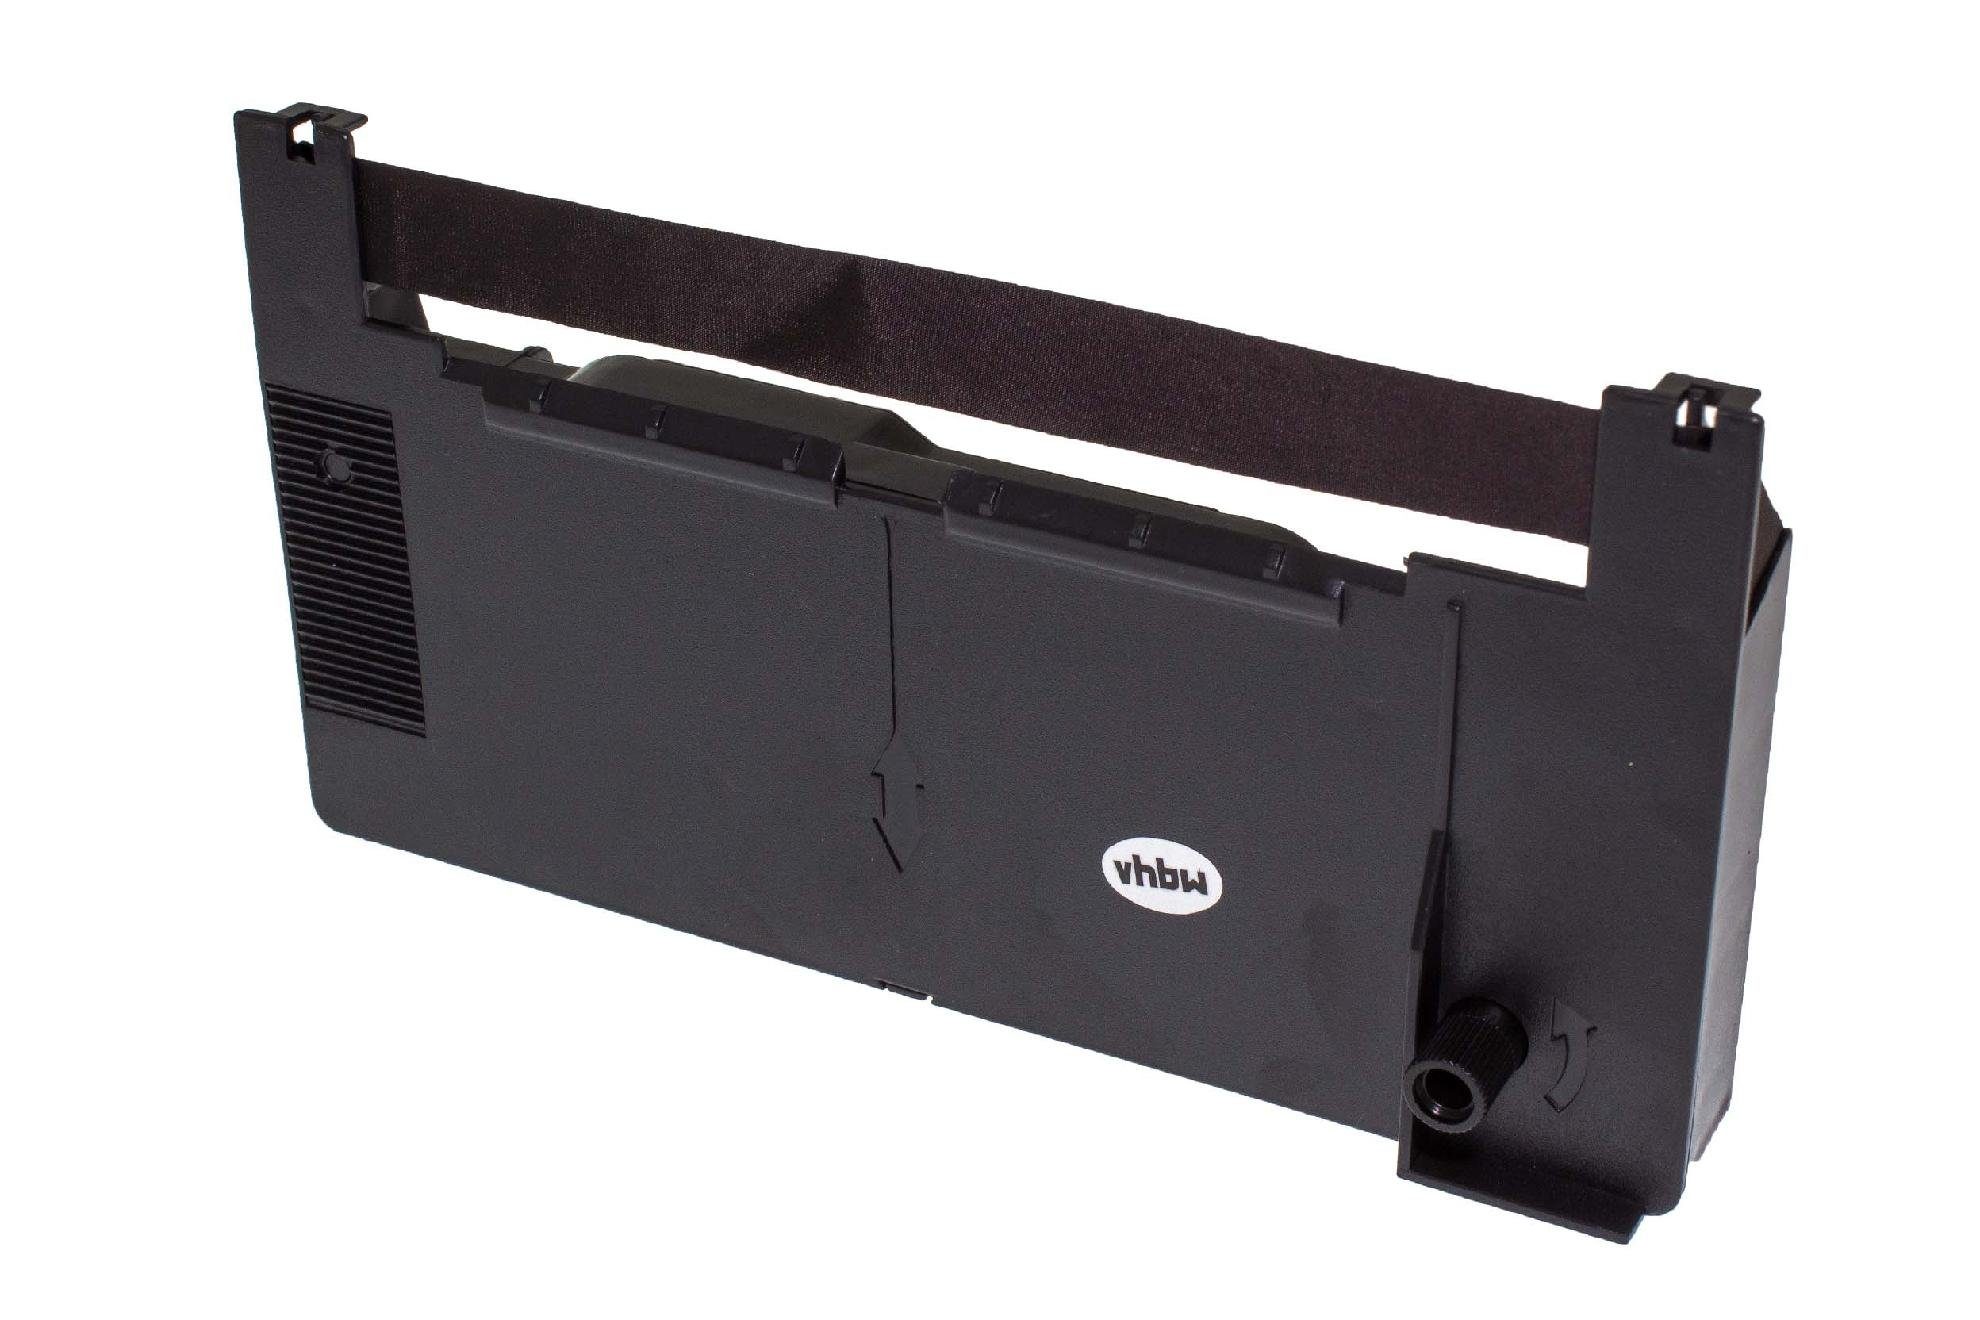 General & G vhbw G passend mit Fujitsu General Beschriftungsband, für 7500 Kopierer Drucker Kompatibel 7500, Nadeldrucker Serie